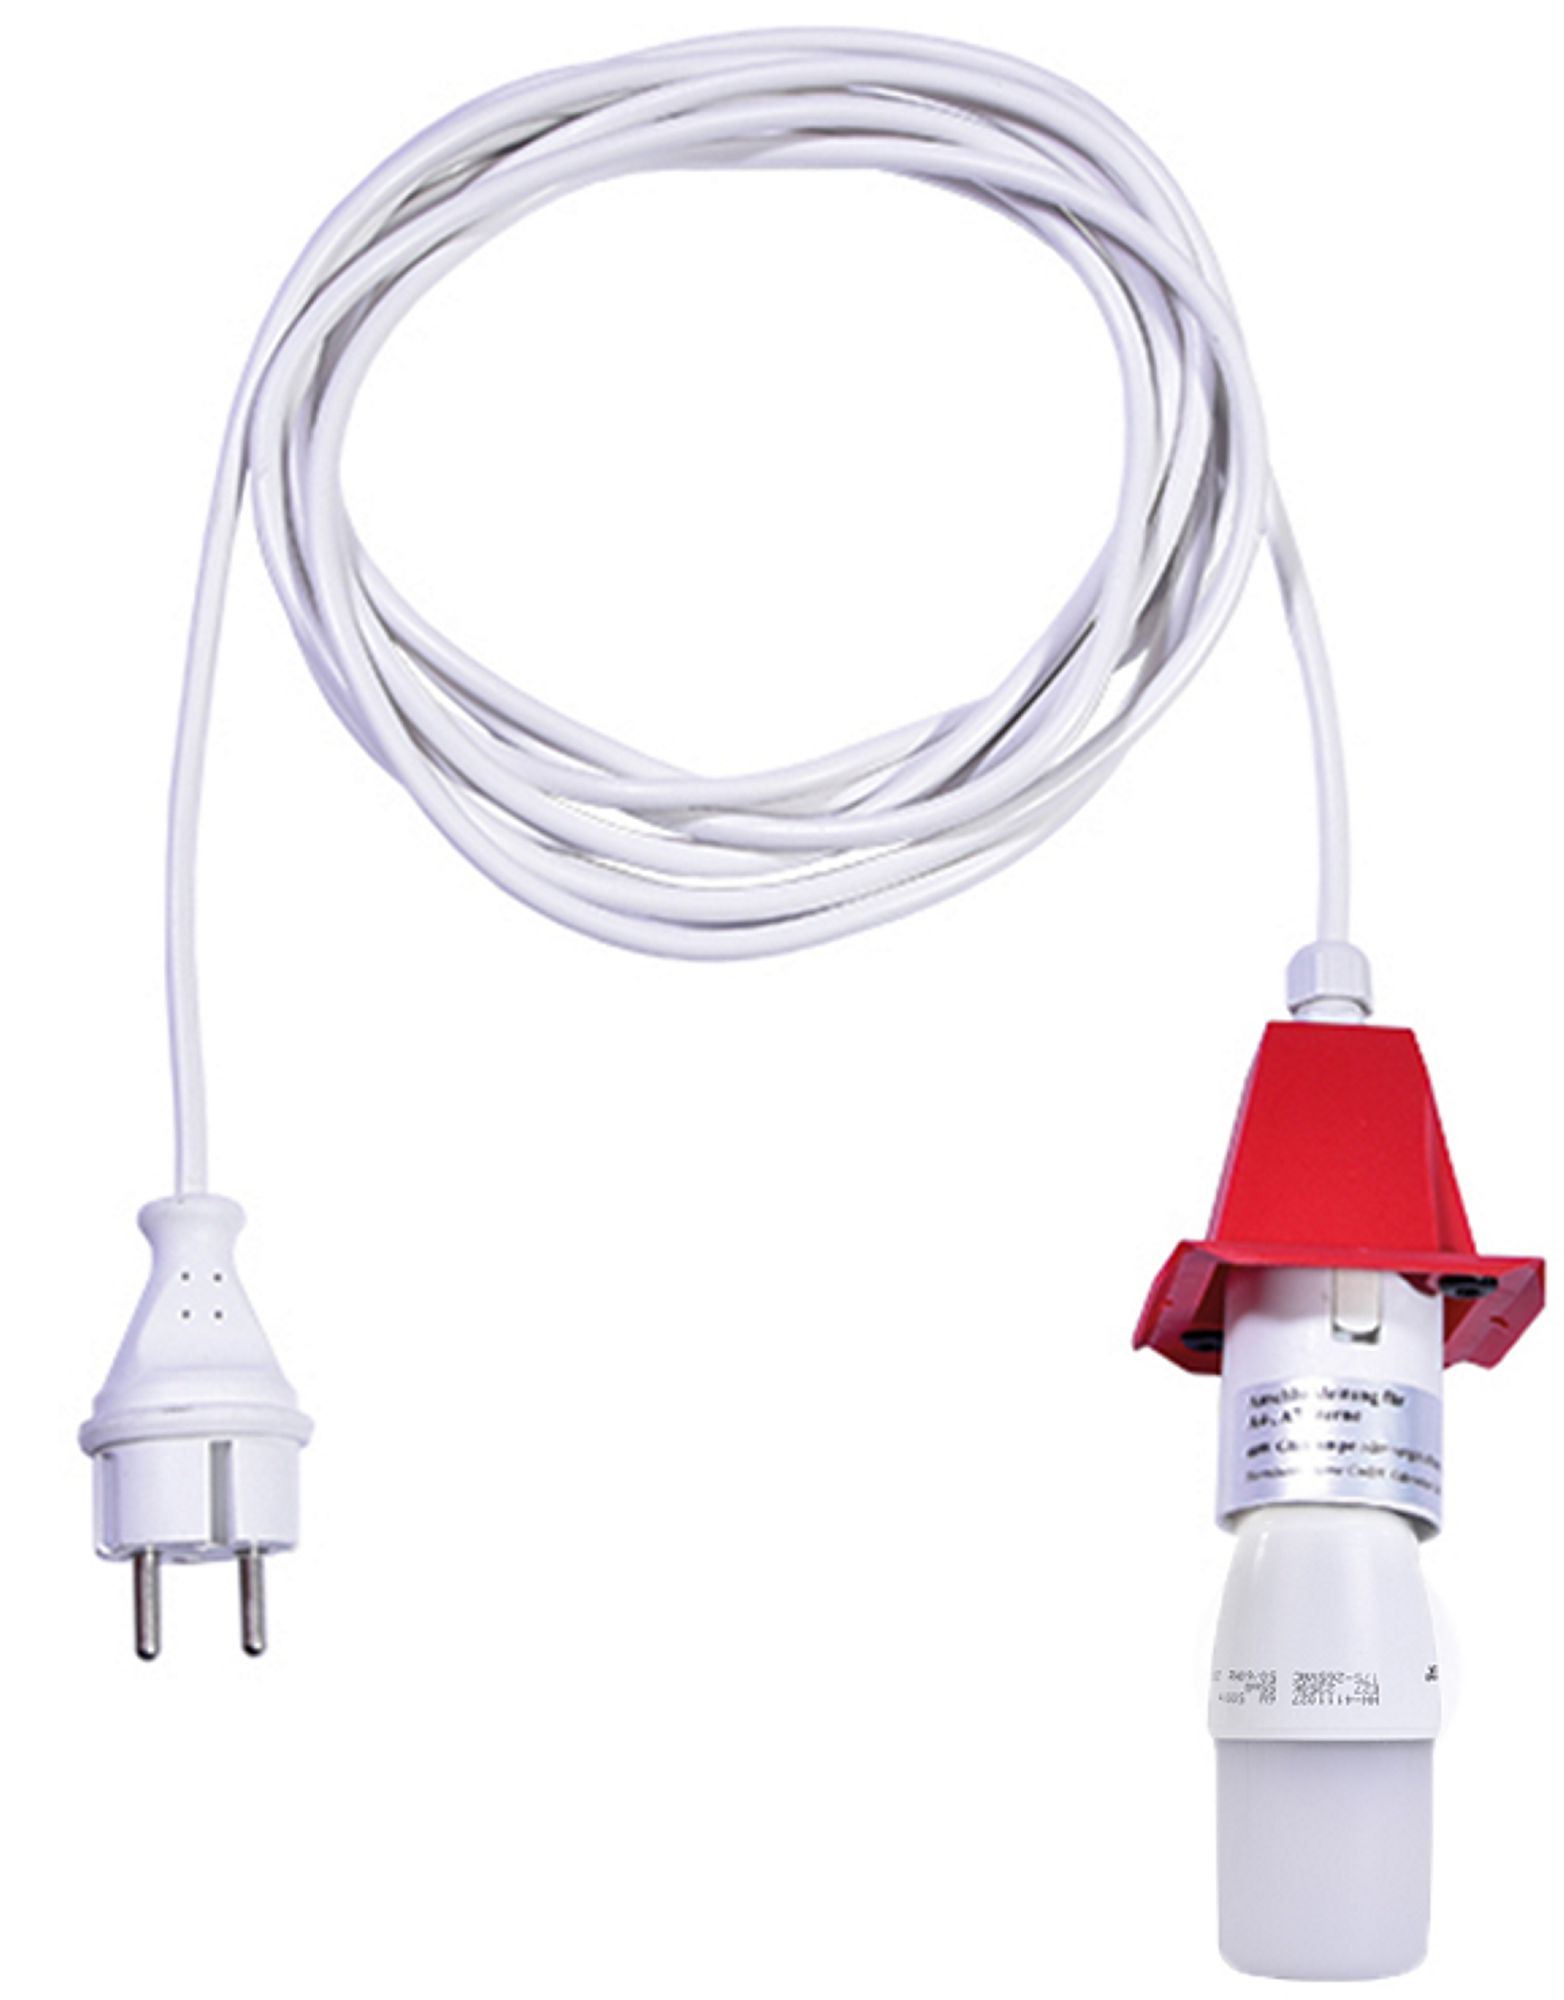 Kabel für A4/A7 - weißes Kabel 5m, Deckel rot